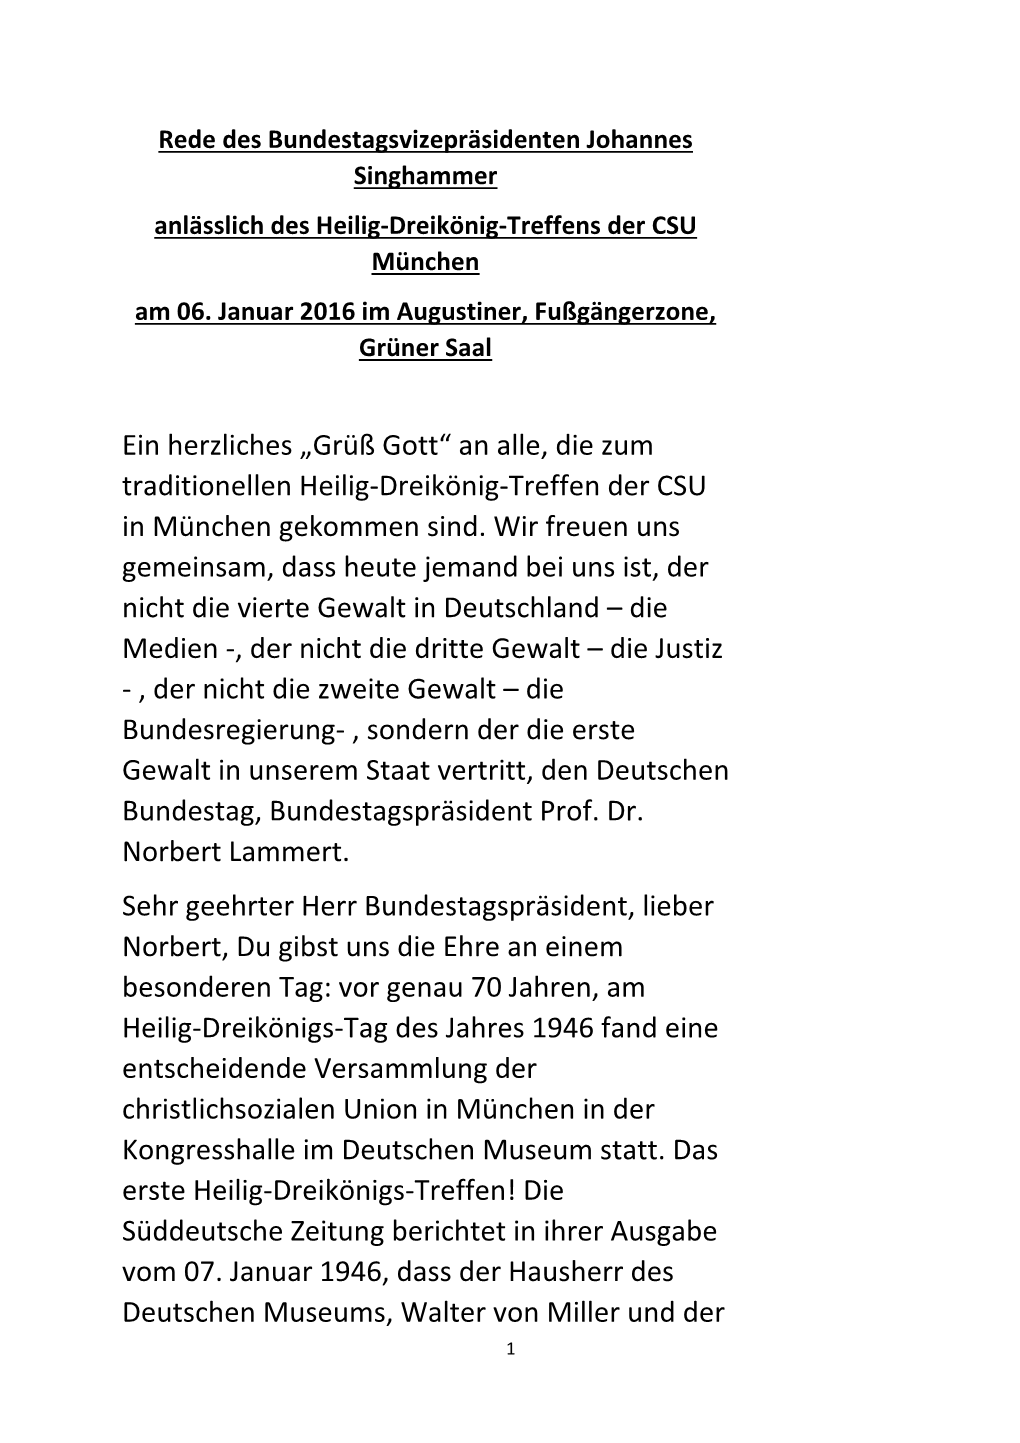 An Alle, Die Zum Traditionellen Heilig-Dreikönig-Treffen Der CSU in München Gekommen Sind